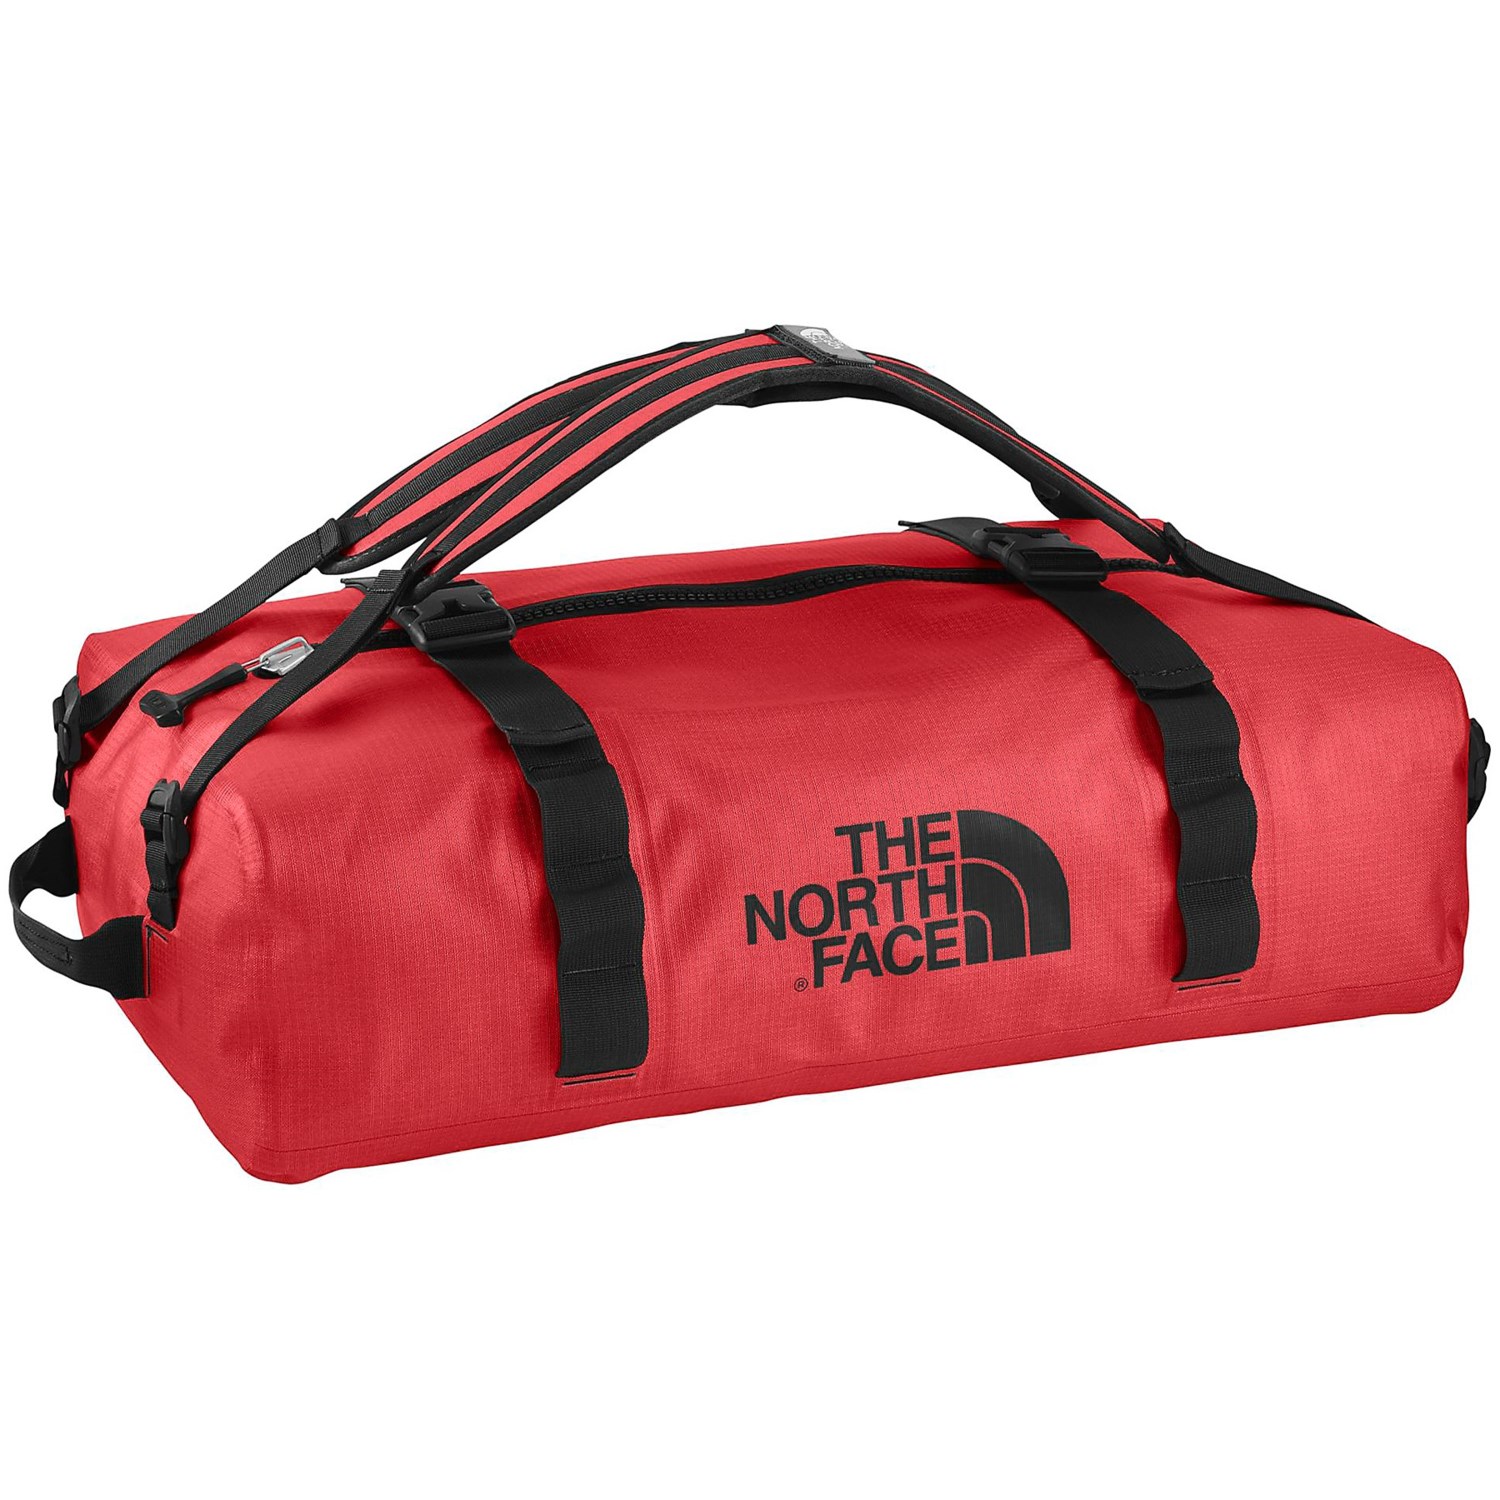 The North Face Waterproof Duffel Bag - Medium 6399X